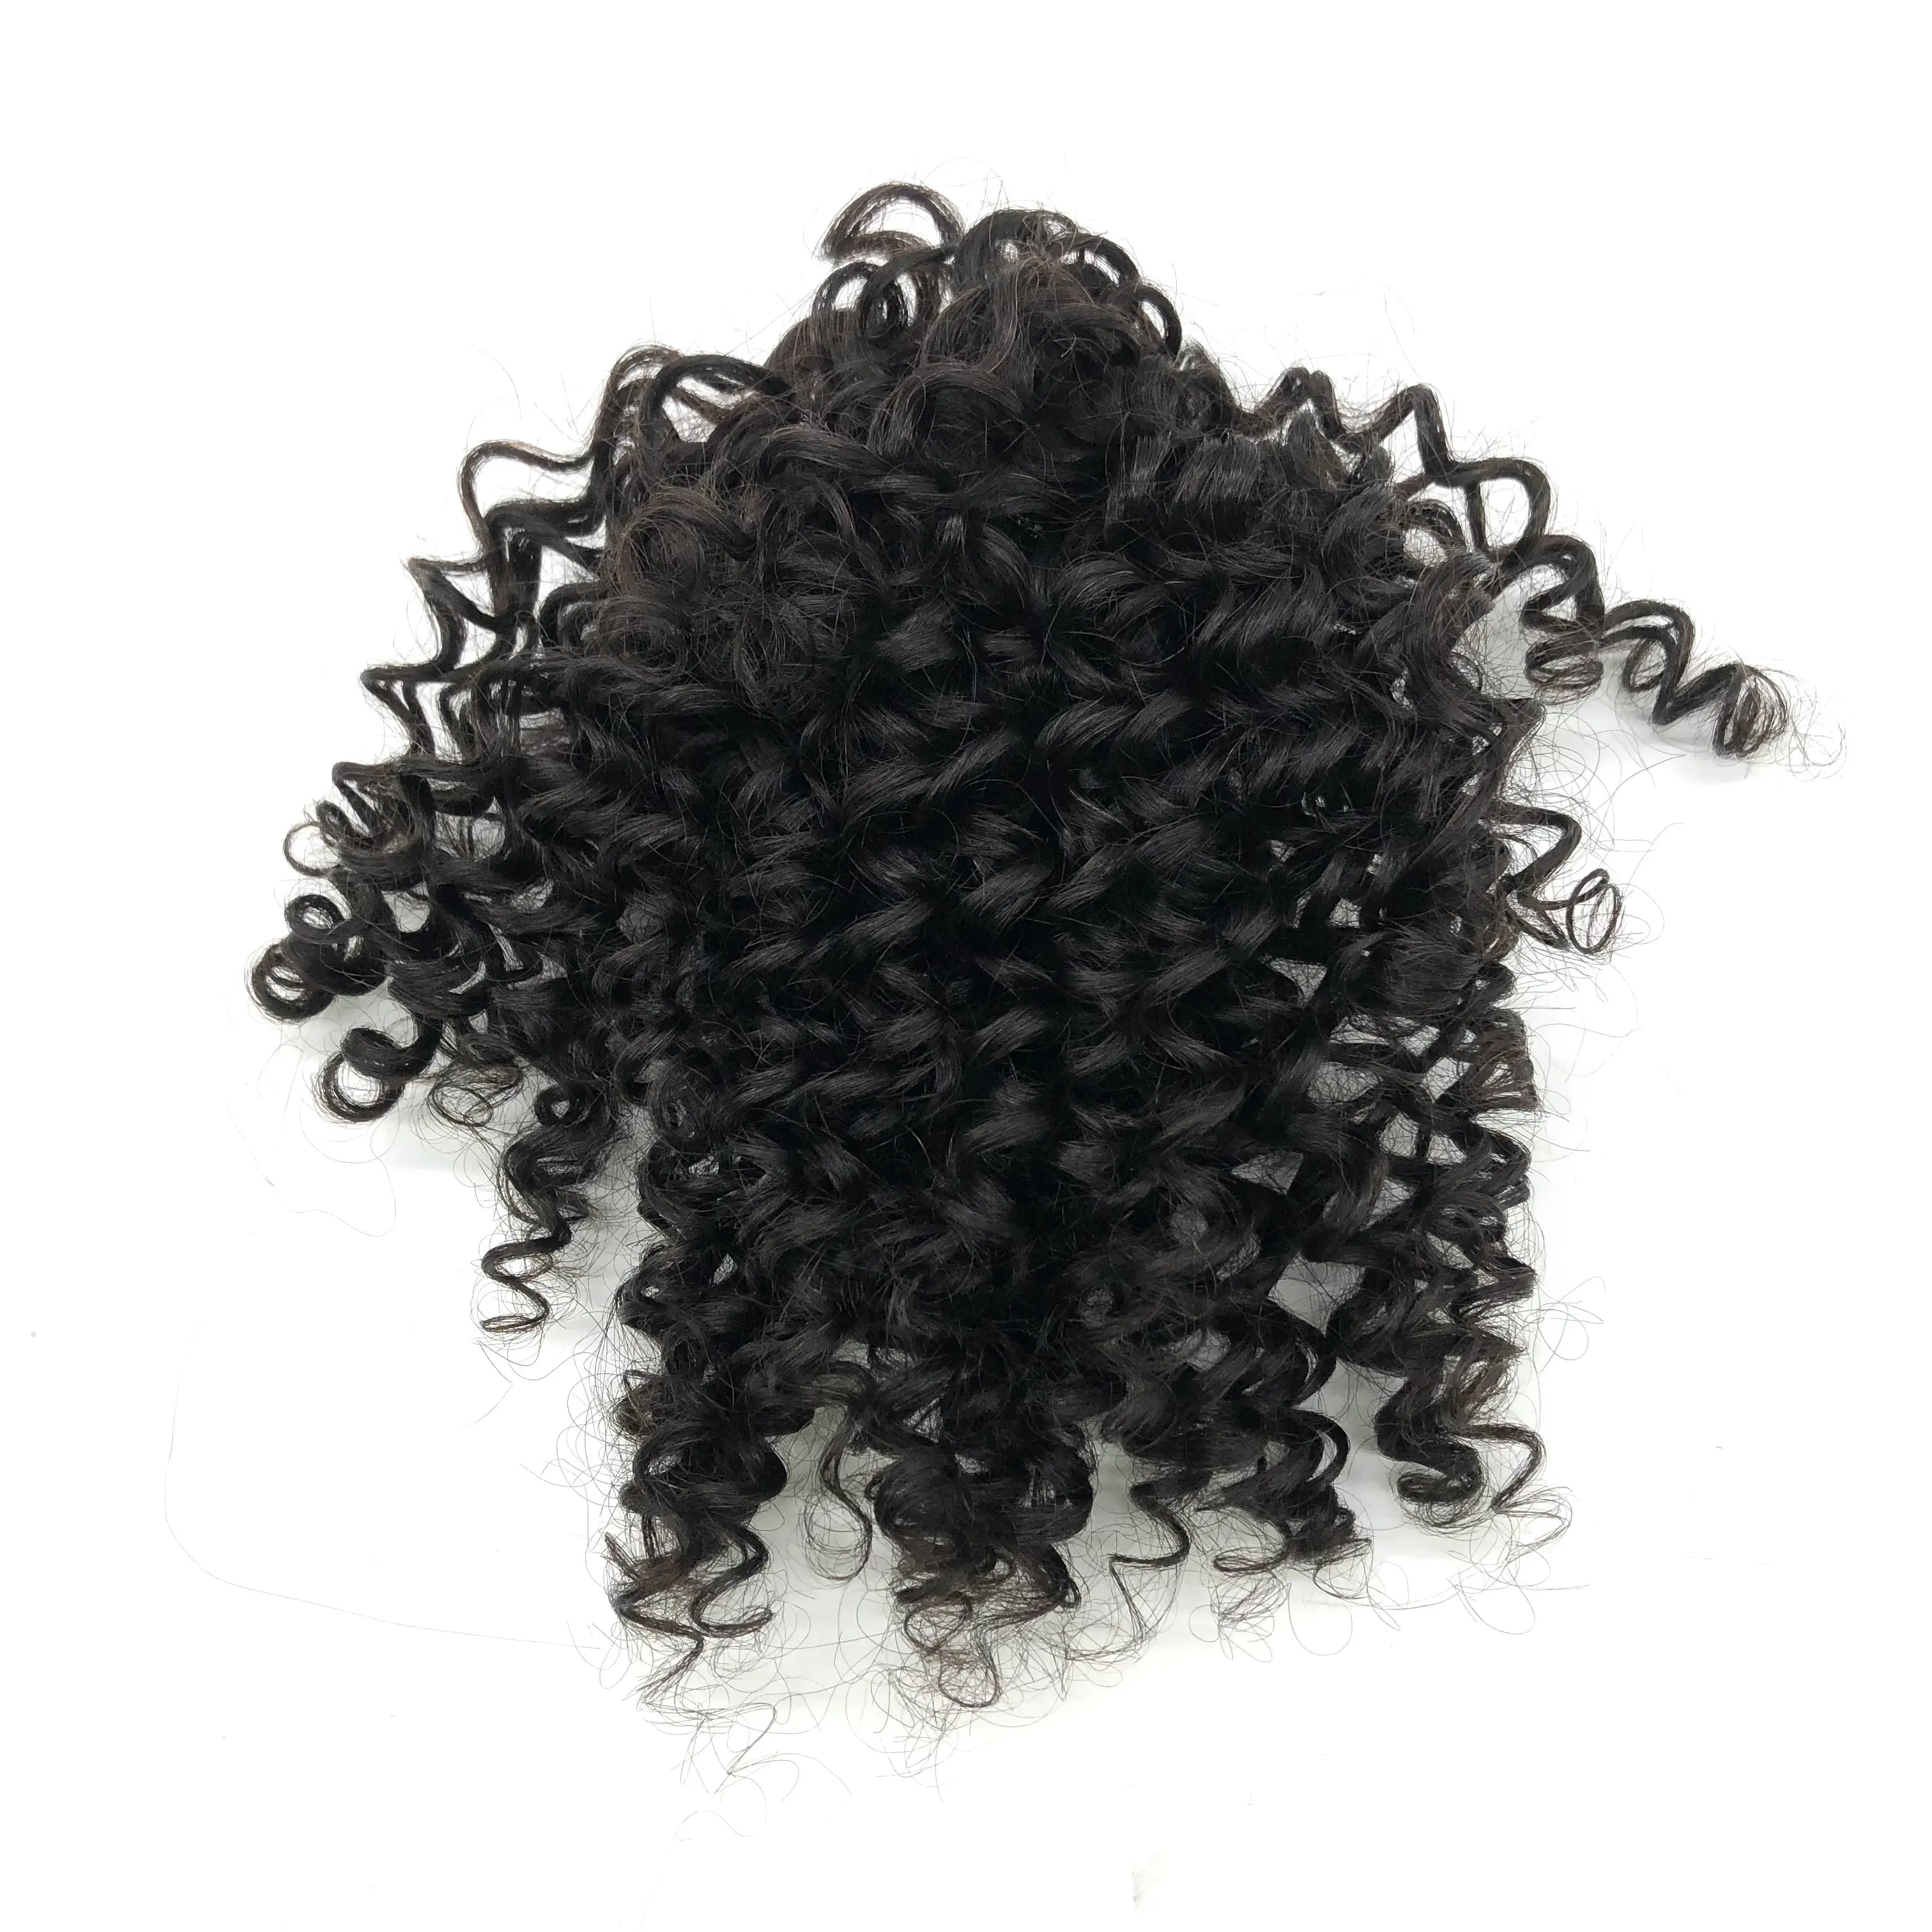 AU remy hair 8 pollici Clip on Hairpiece Extension 100 veri capelli umani facile da usare panino riccio per le donne